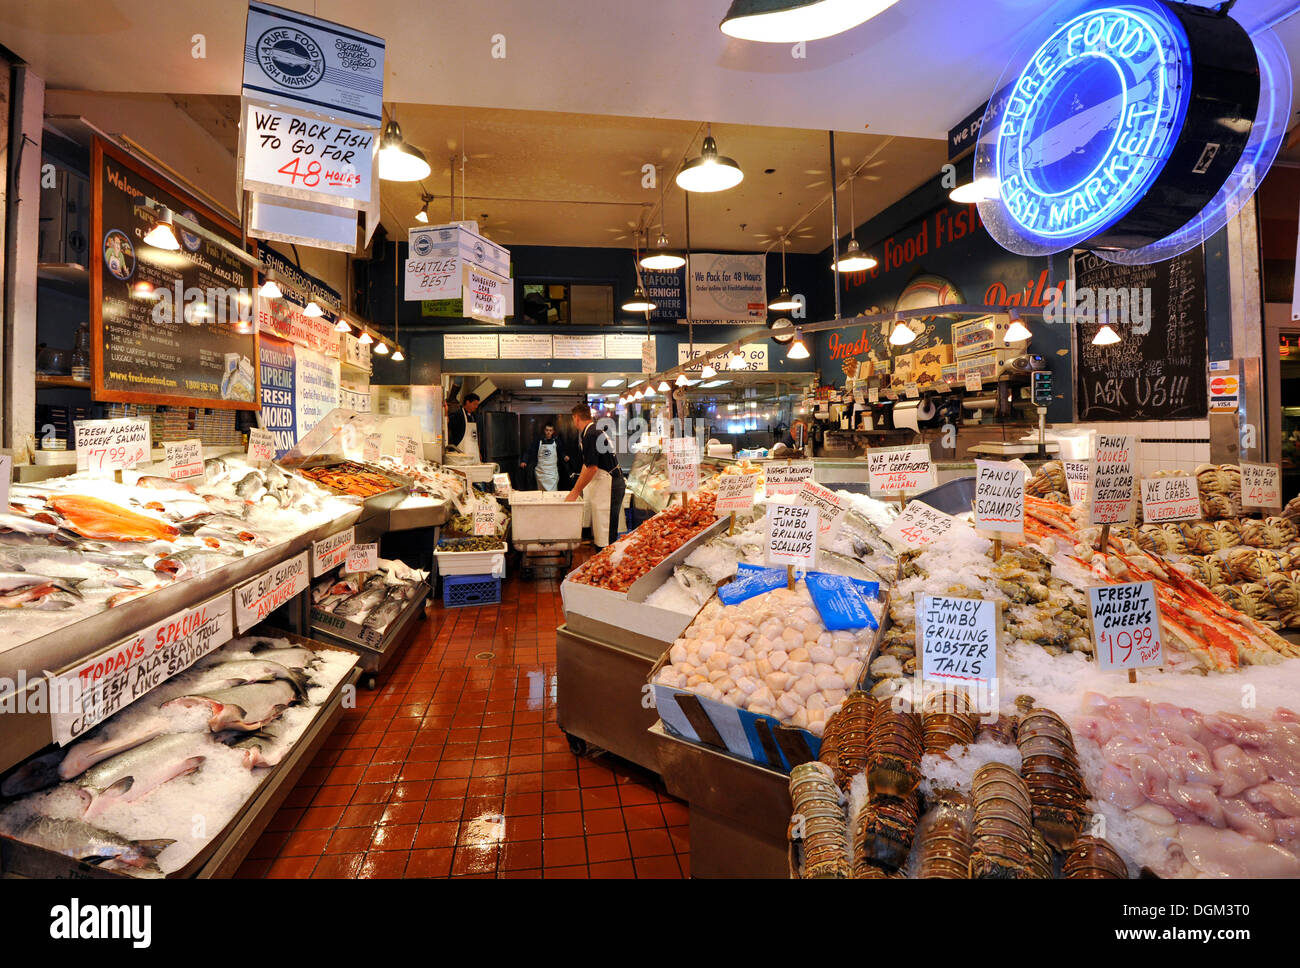 Pescheria, piatti a base di frutti di mare freschi, i pesci e i granchi, su ghiaccio, il Pike Place Market pubblica, mercato del pesce, Seattle, Washington, Stati Uniti d'America Foto Stock